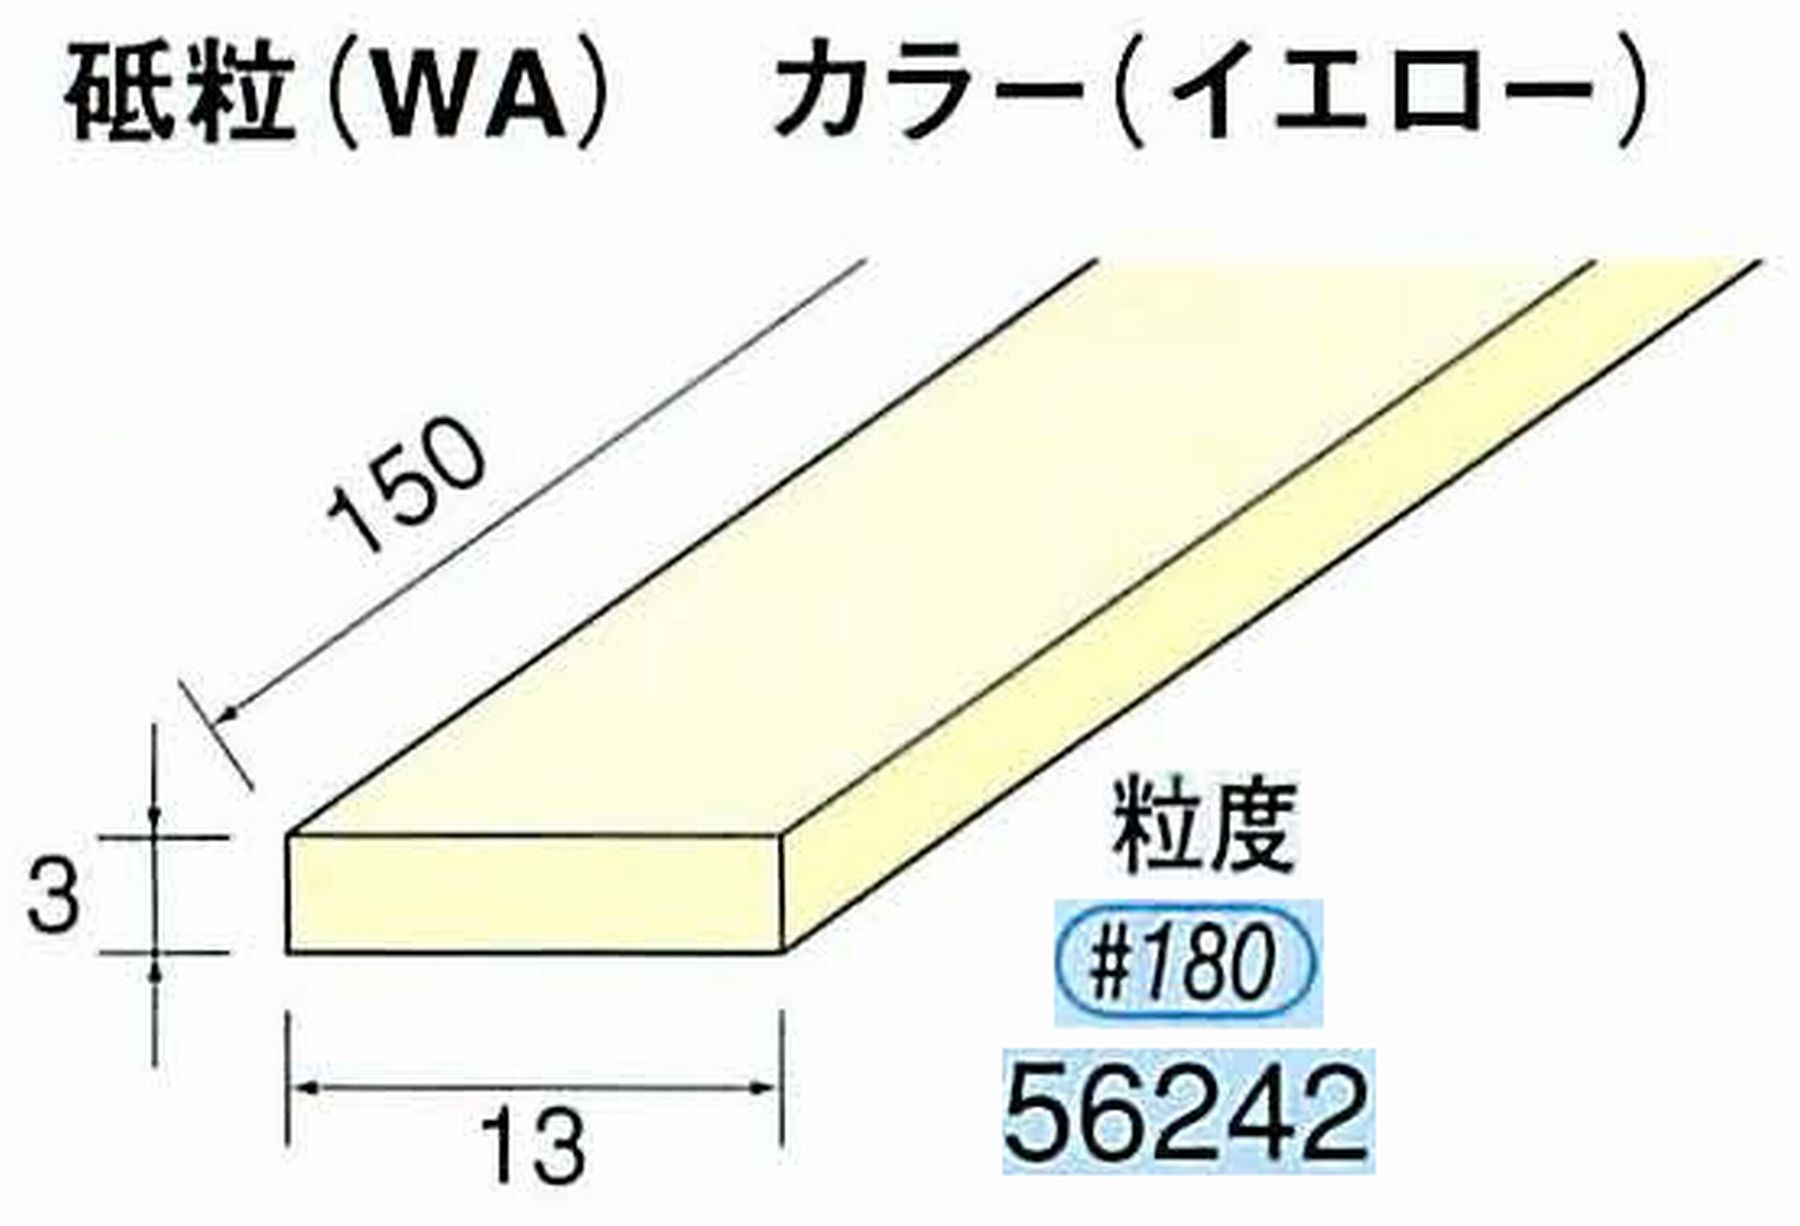 ナカニシ/NAKANISHI スティック砥石 イエロー・フィニッシュシリーズ 砥粒(WA) 56242